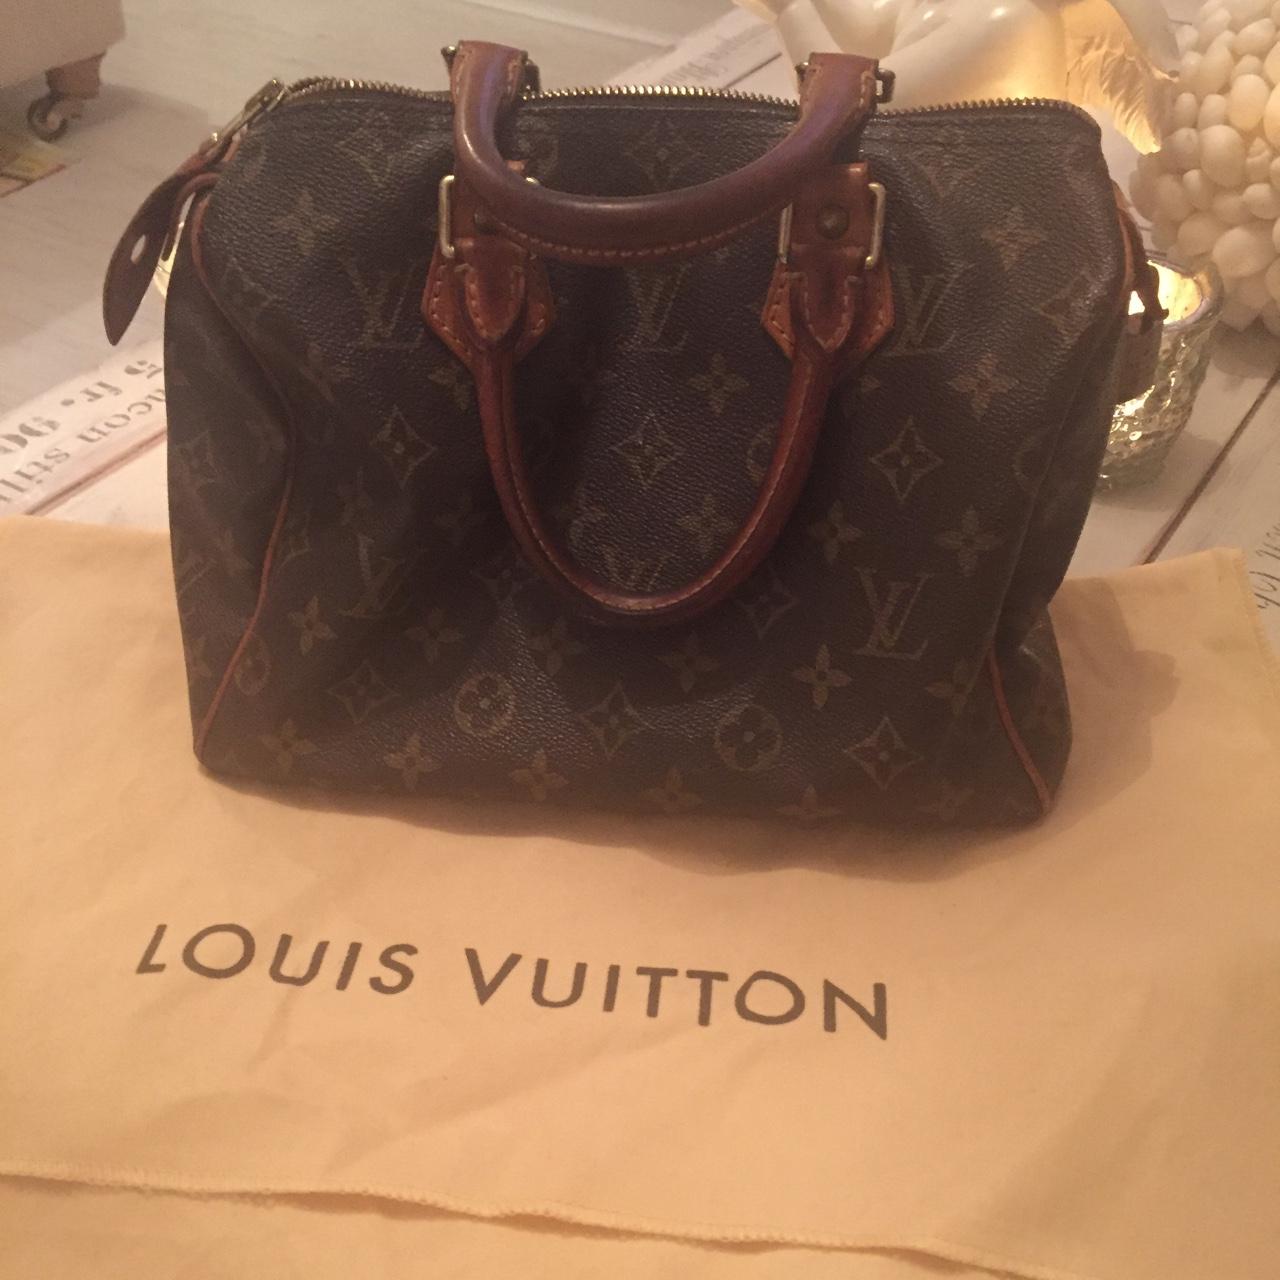 Authentic vintage Louis Vuitton Speedy 25 #LV - Depop